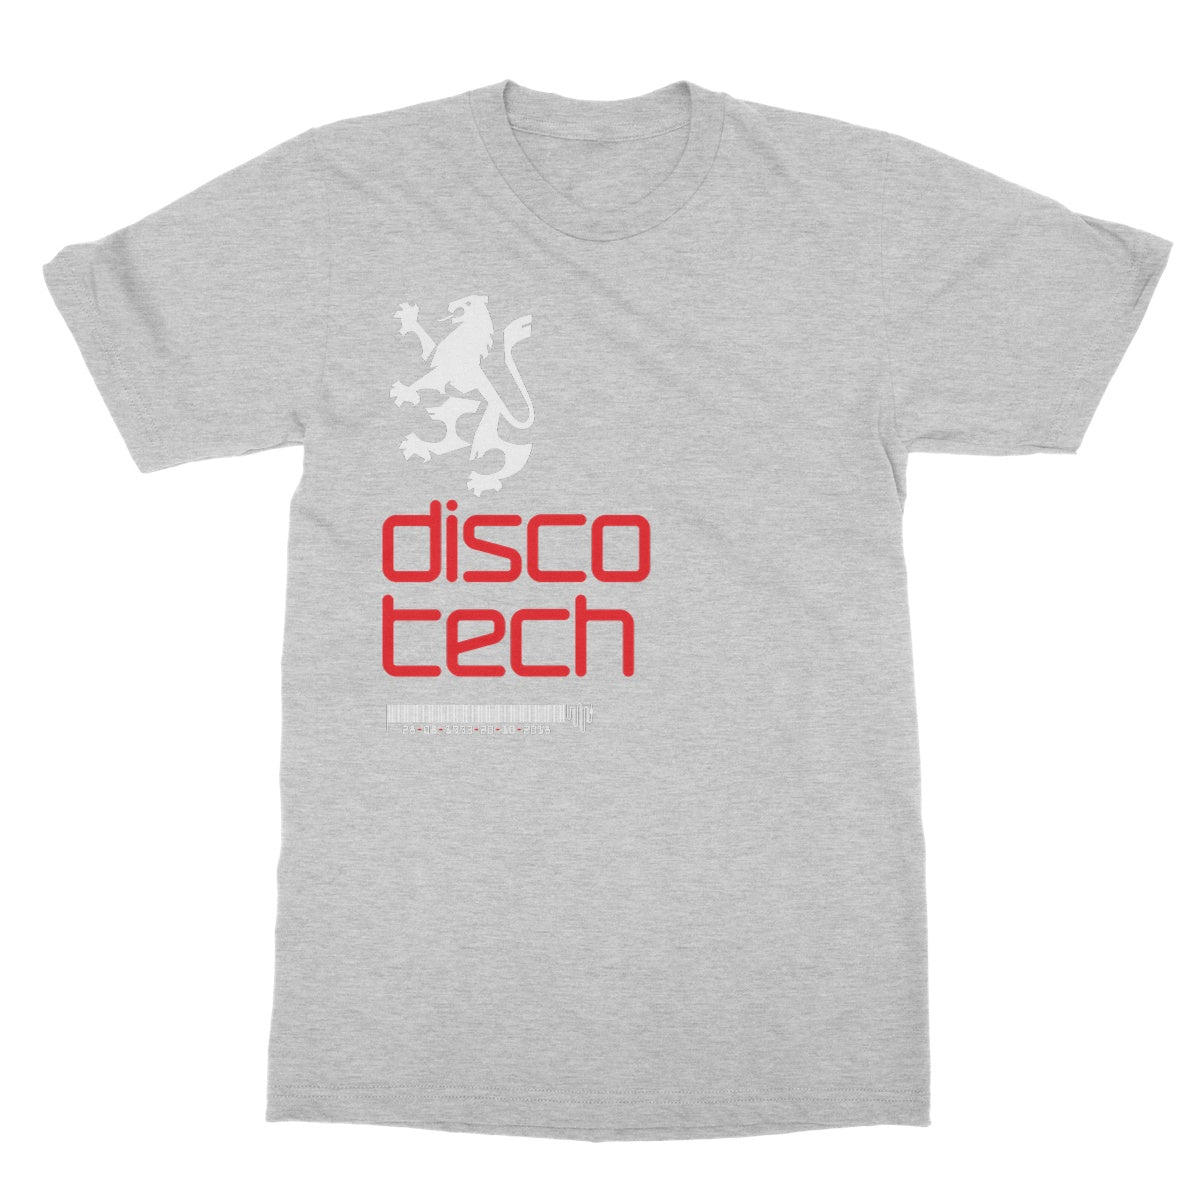 Disco-Tech T-Shirt